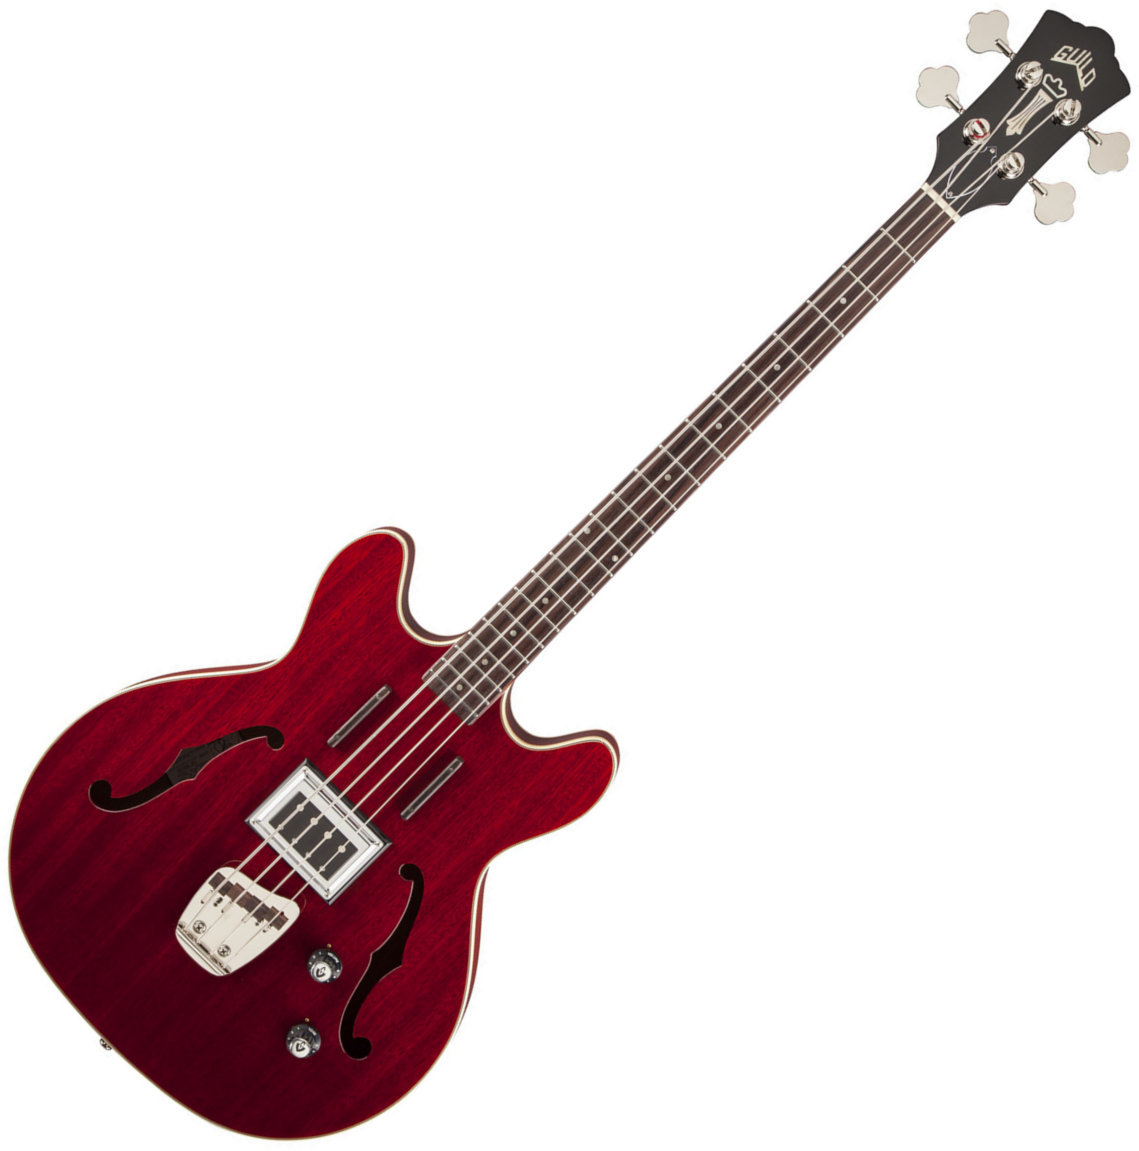 4-string Bassguitar Guild Starfire Cherry Red